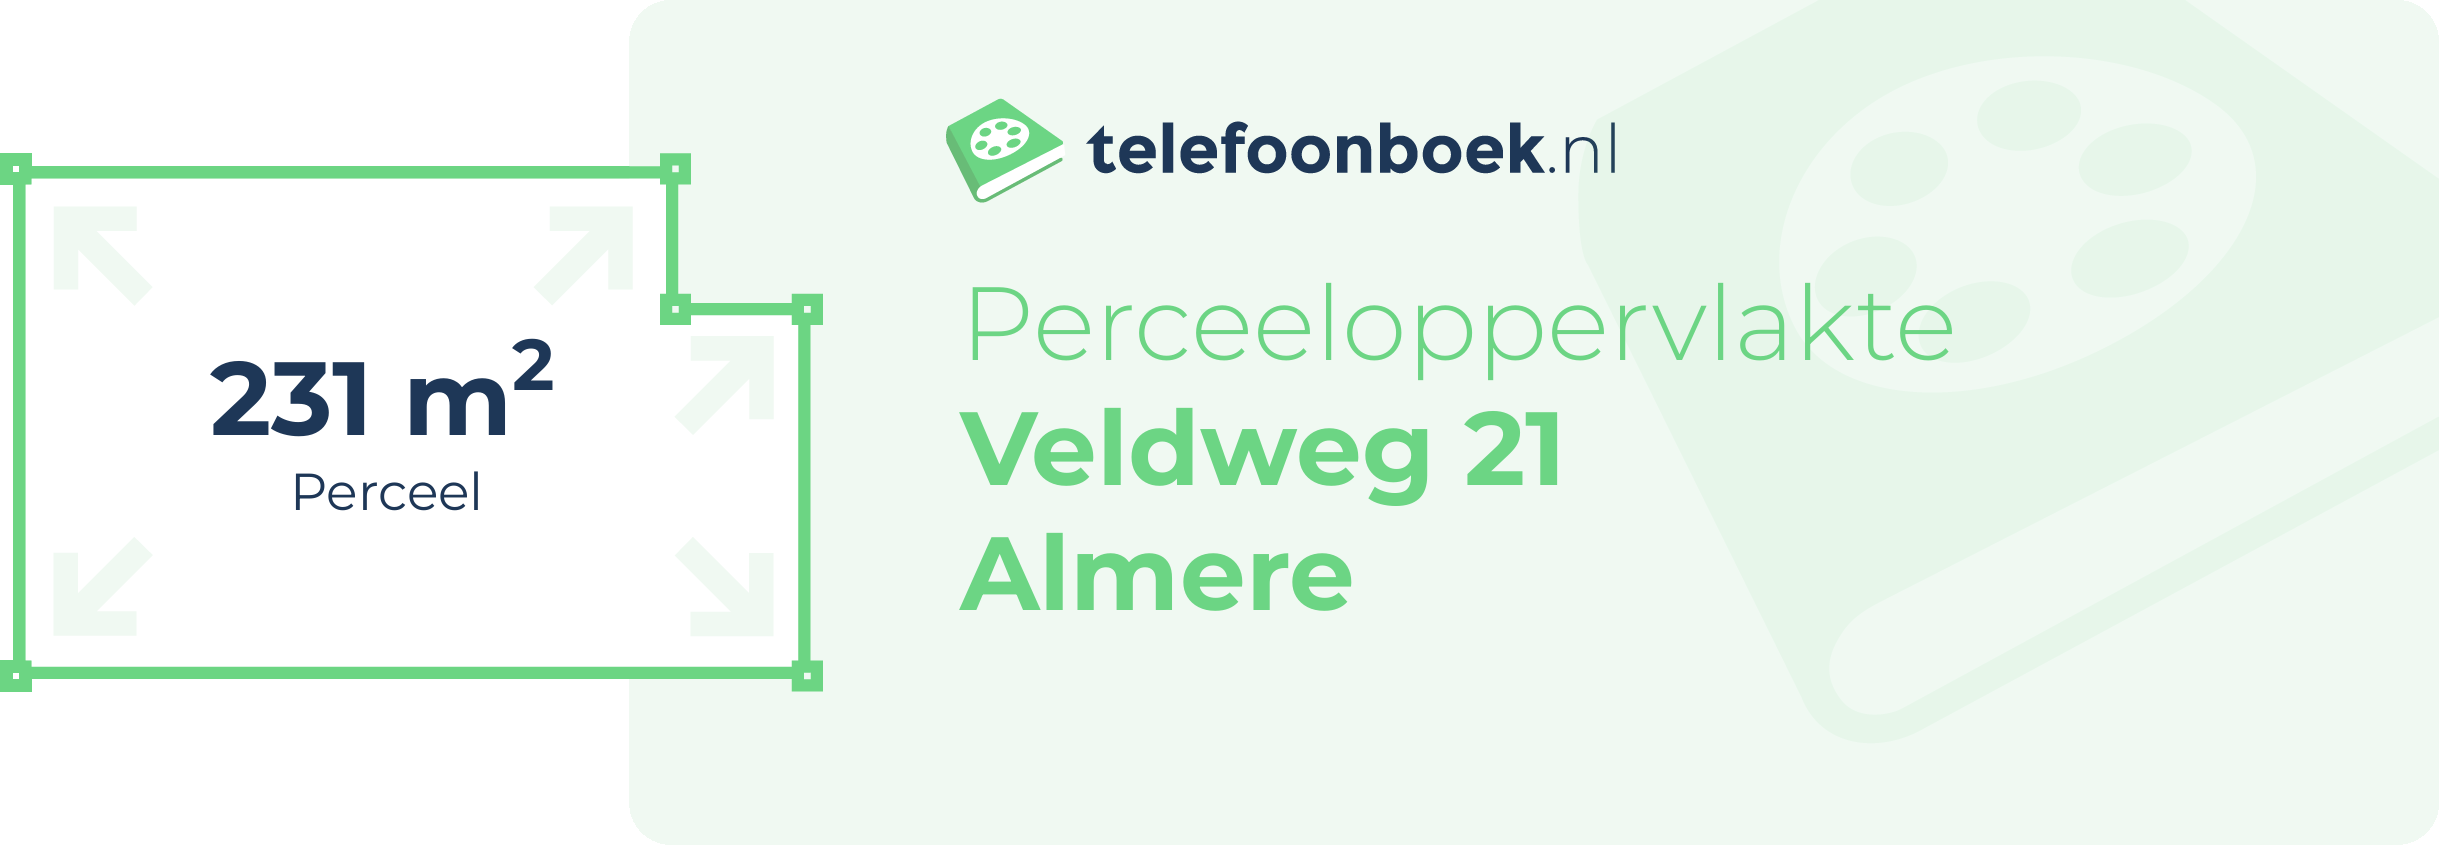 Perceeloppervlakte Veldweg 21 Almere